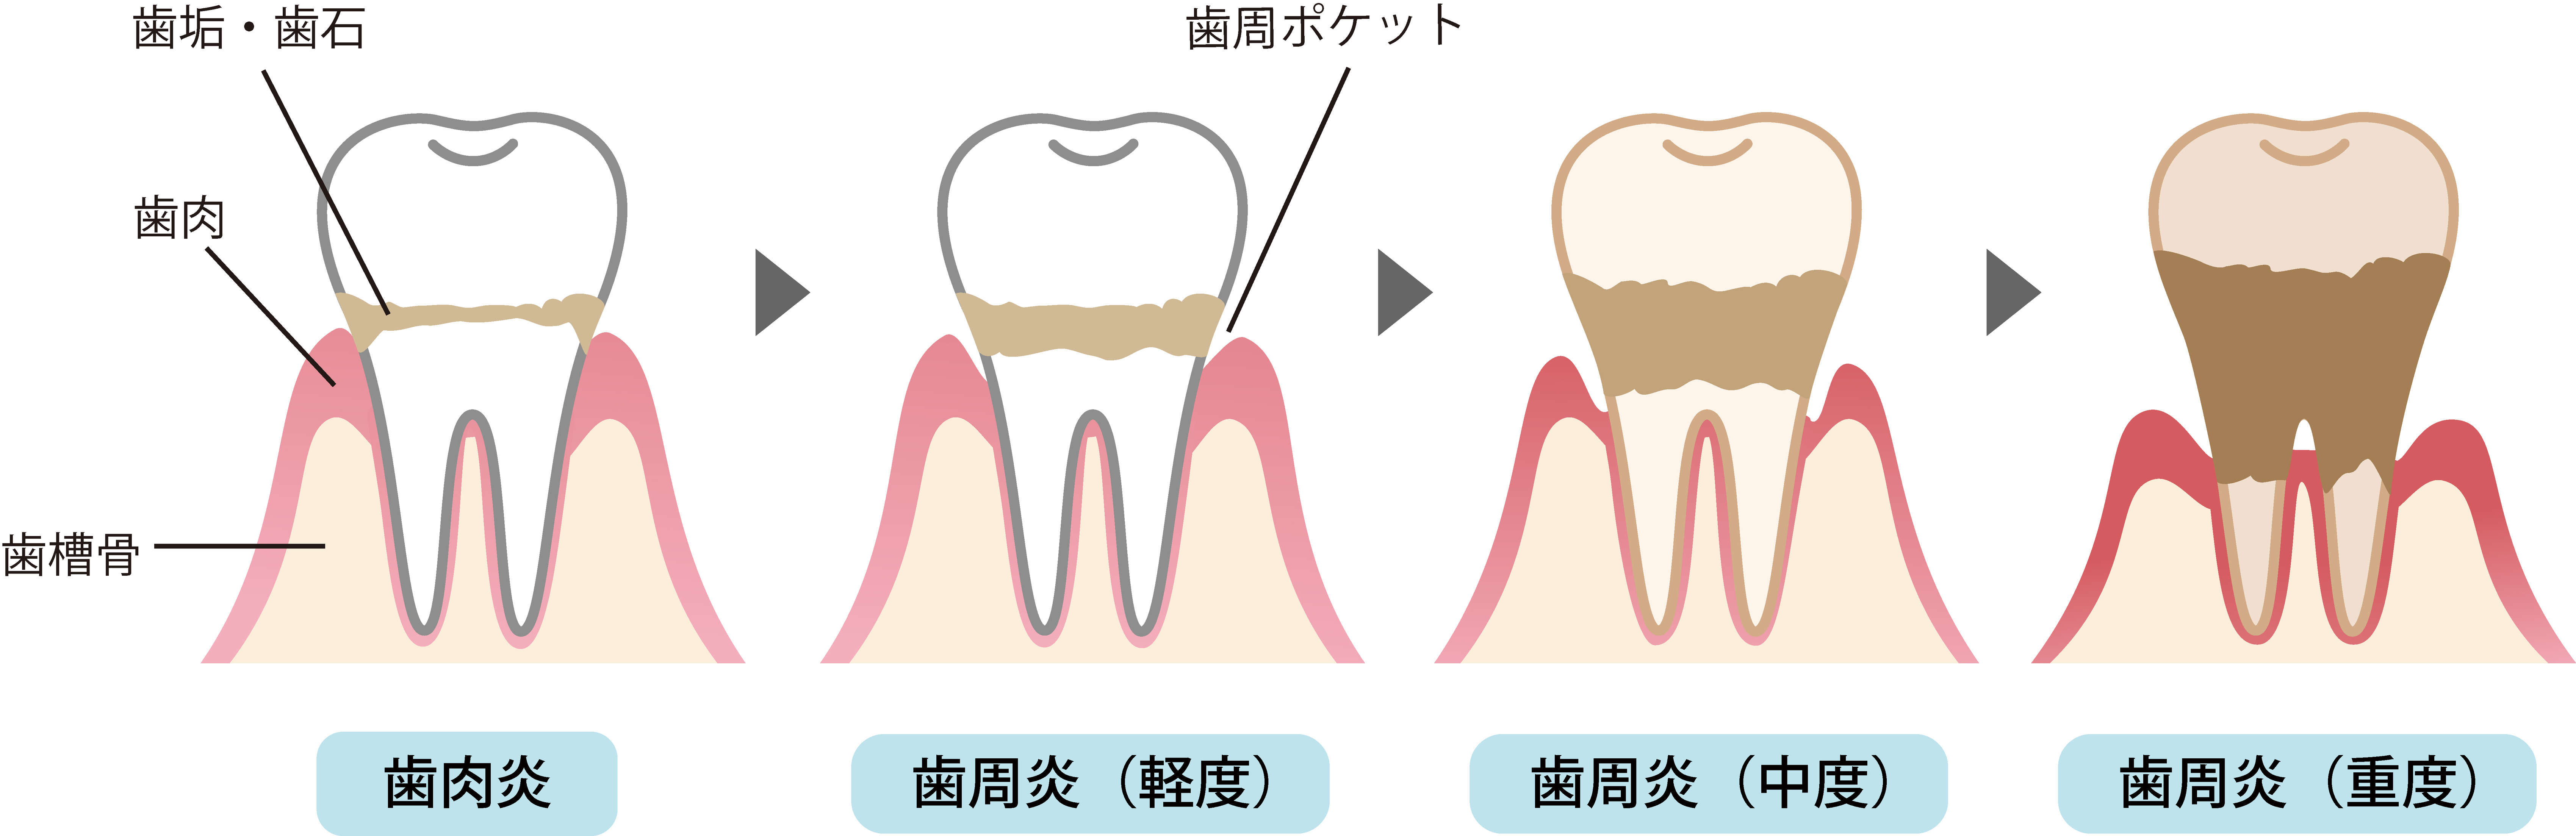 歯周病の進行症状と治療について